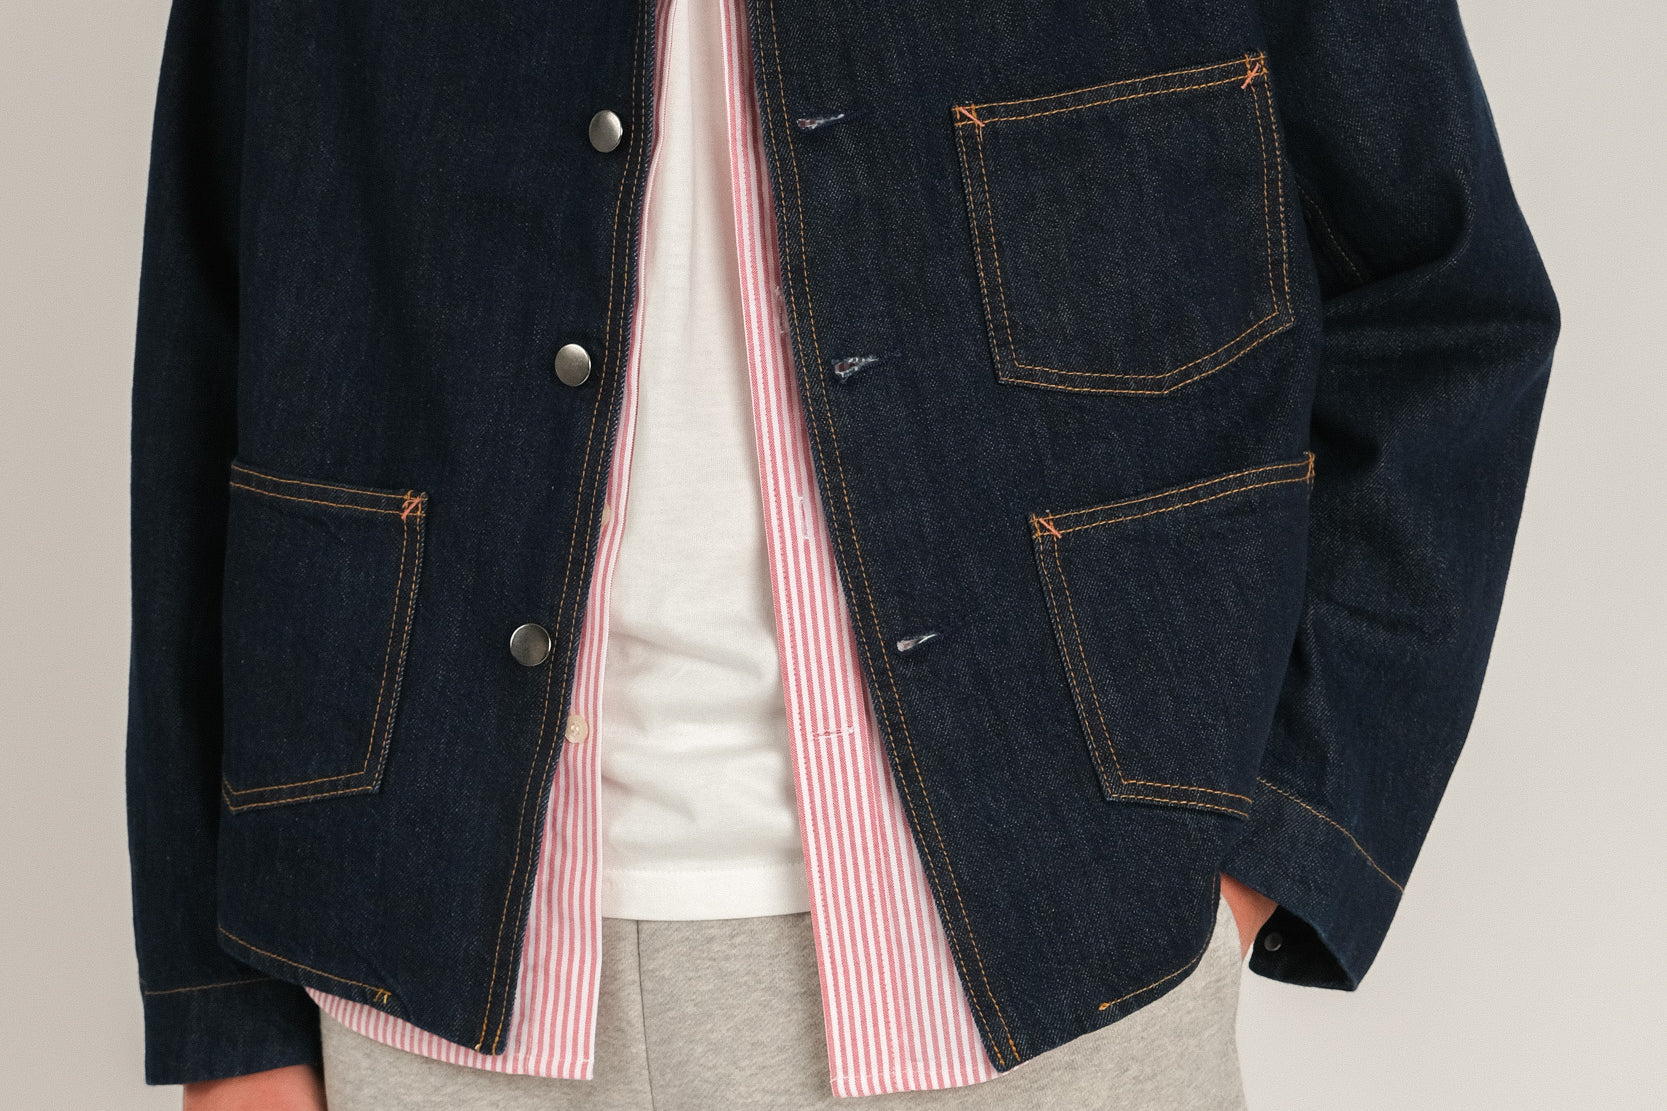 PAINTER Men's jacket | BRUT Vintage Shop | Worldwide shipping – BRUT ...